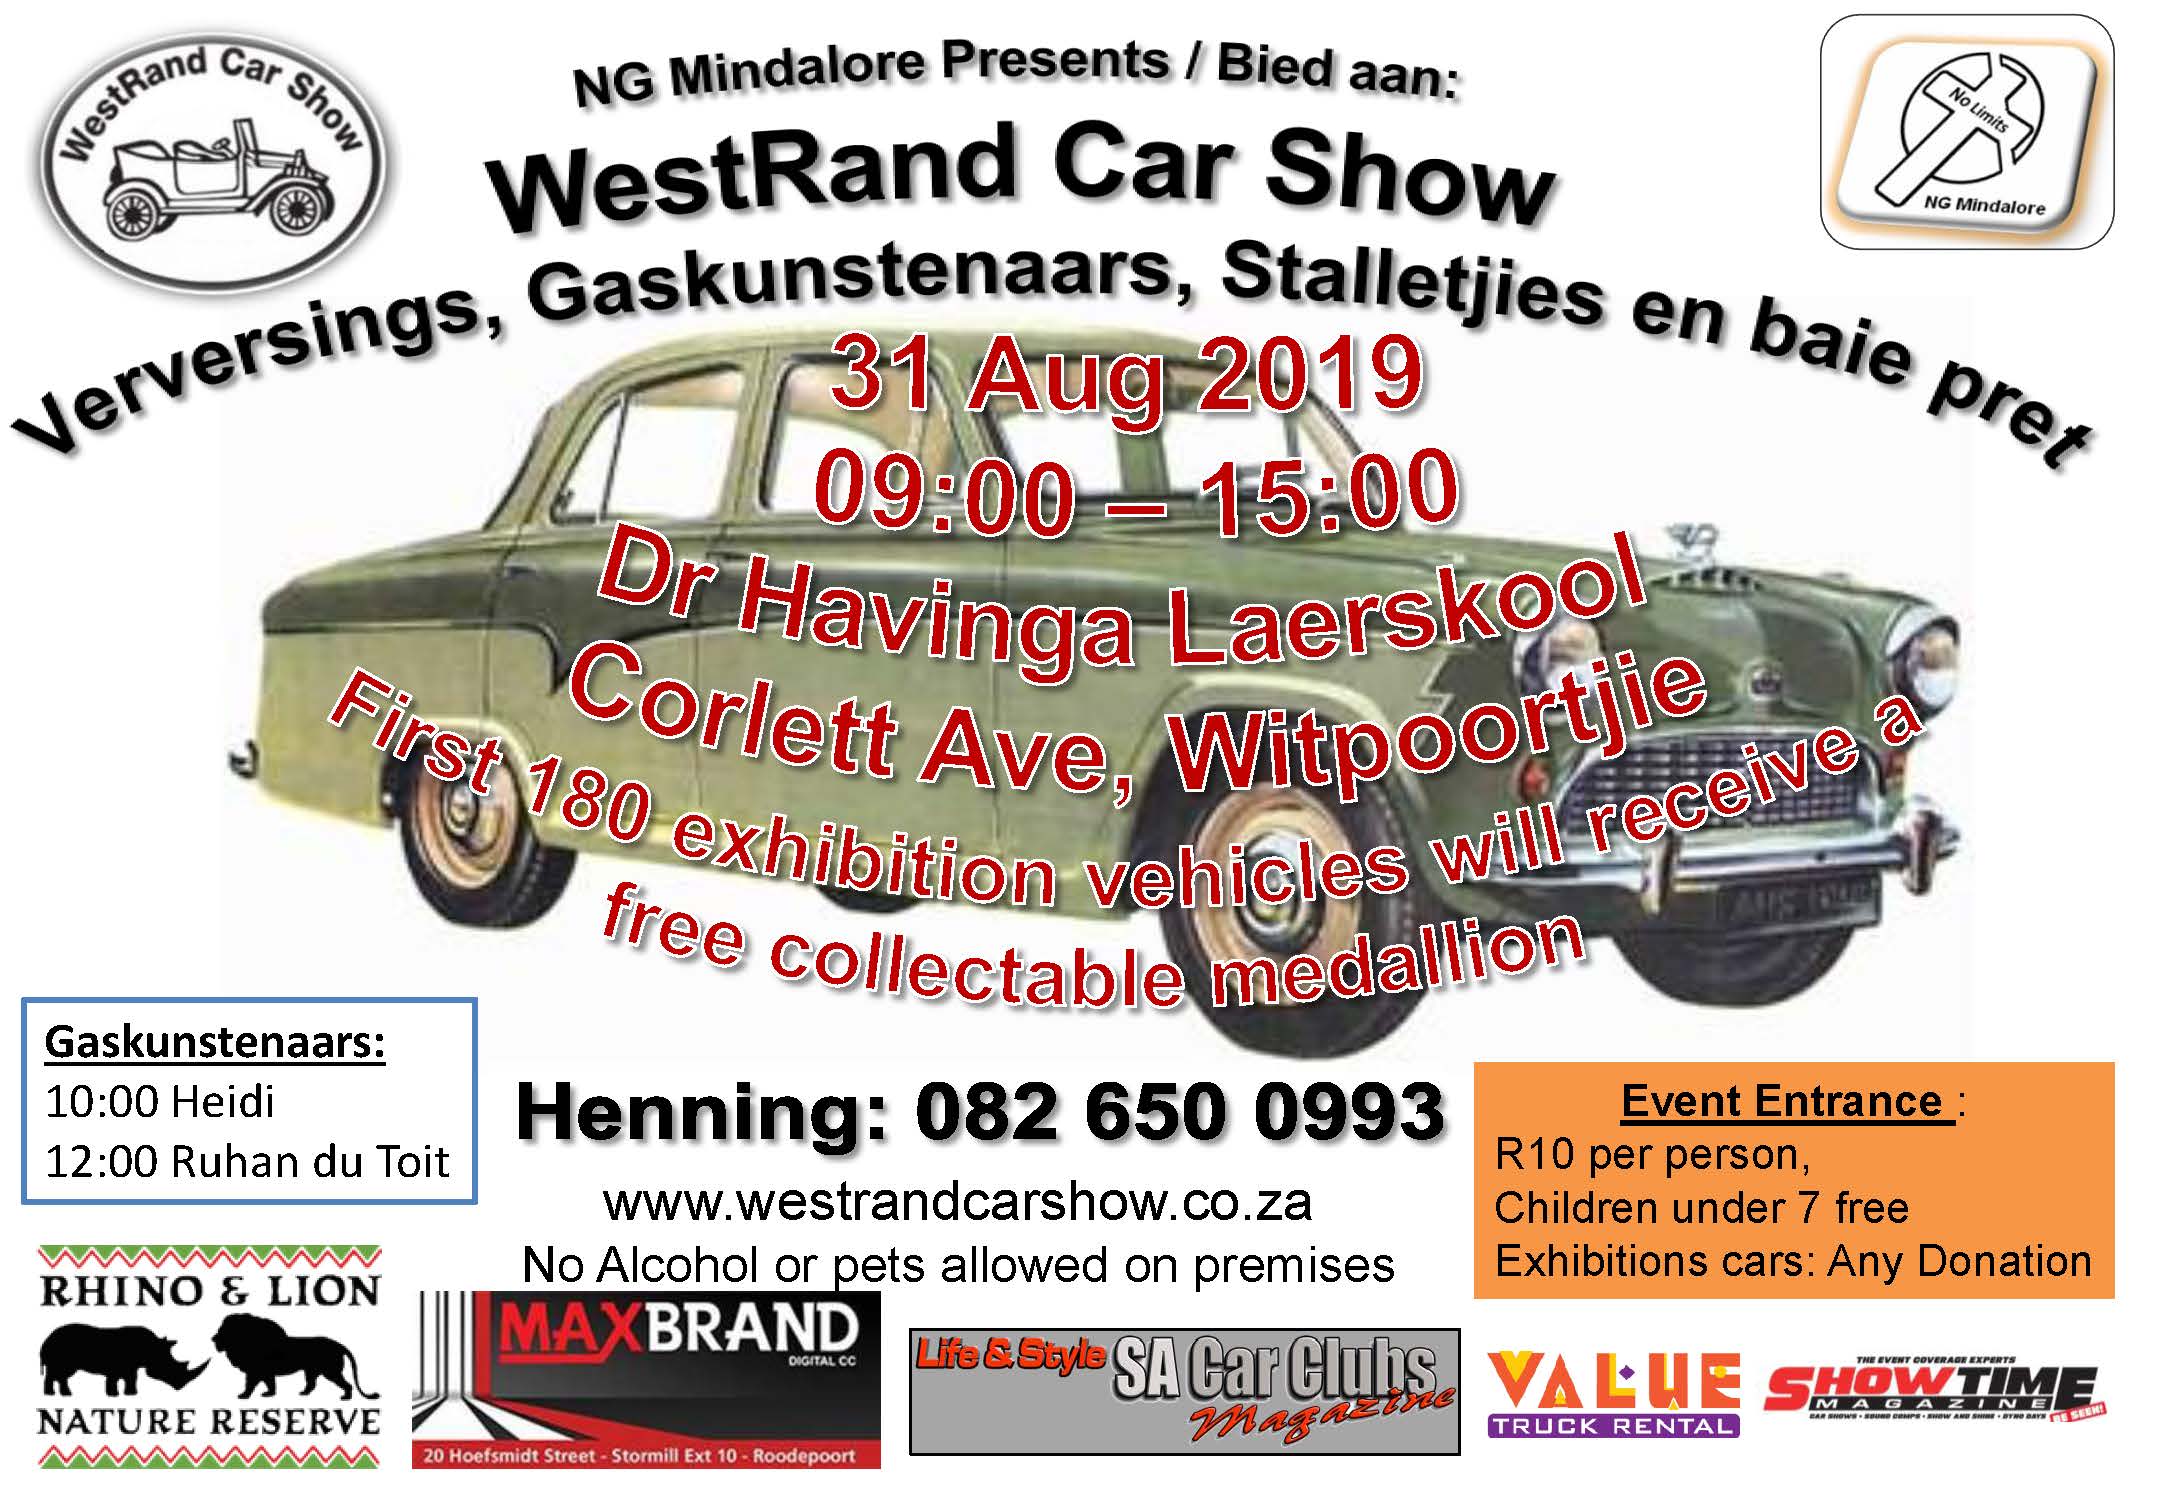 WestRand Car Show 31 Aug